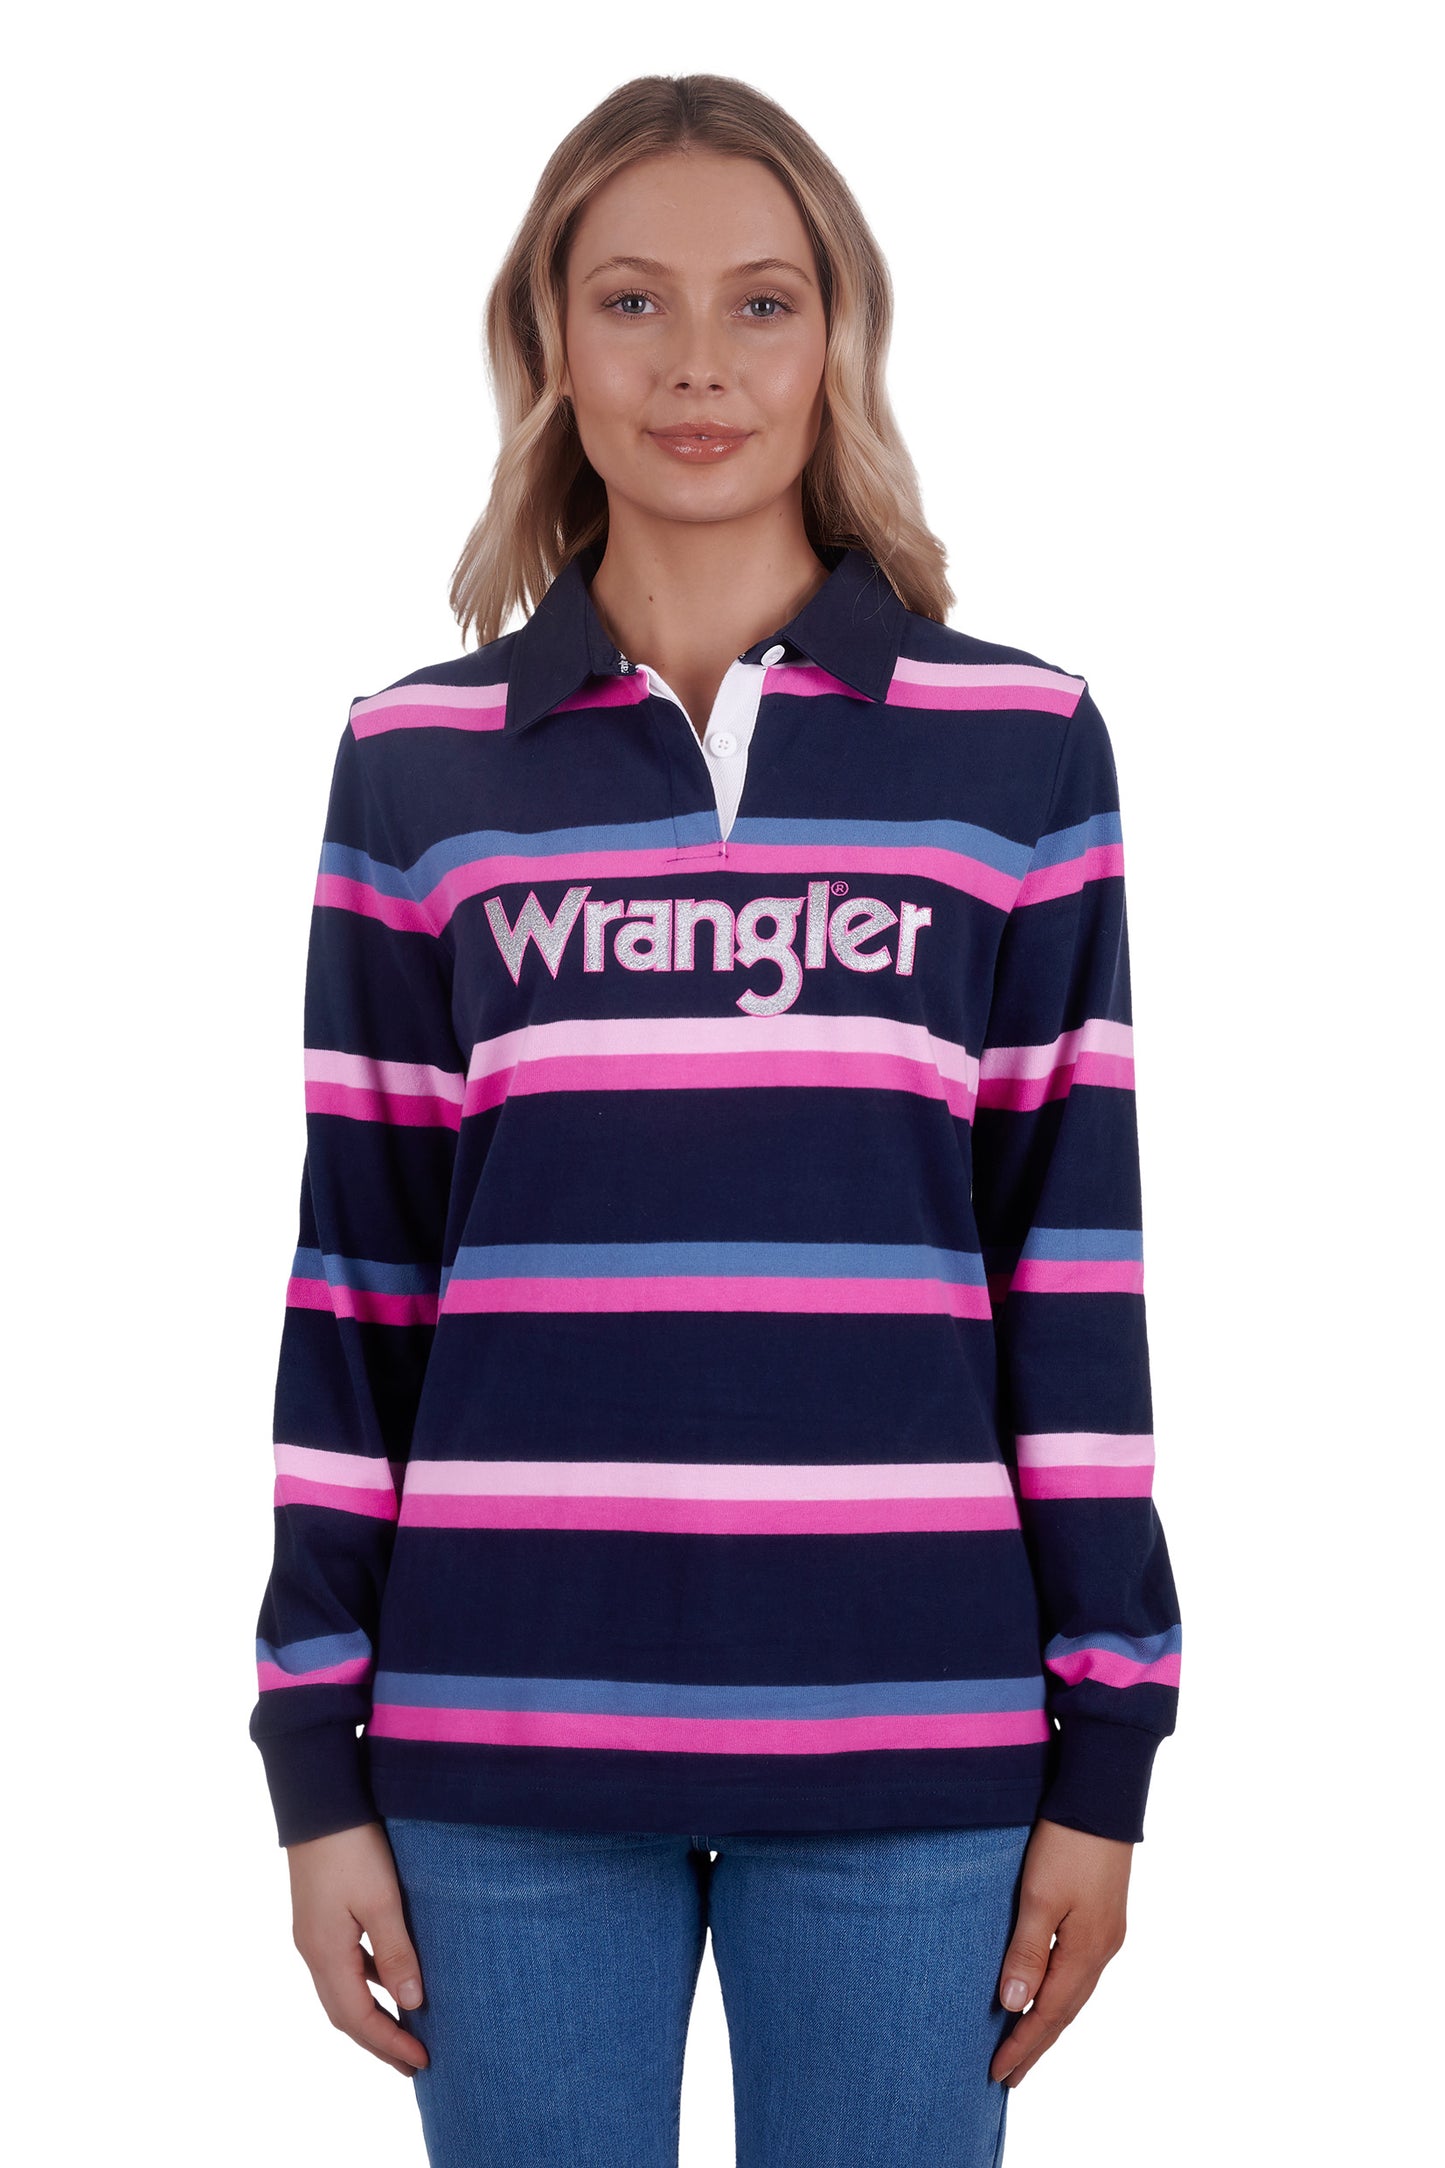 X4W2577076 Wrangler Women's Jada Rugby